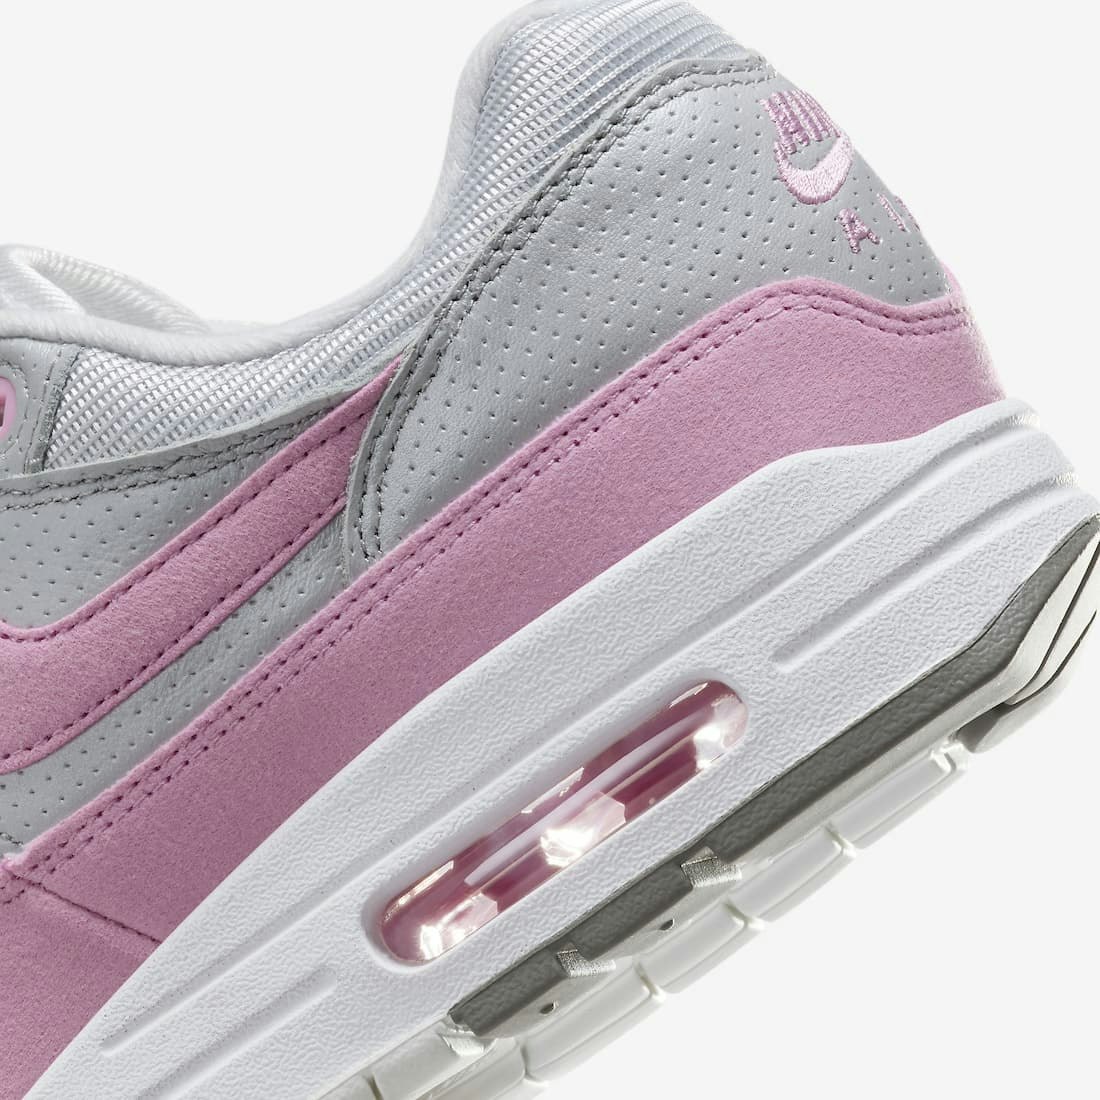 Nike Air Max 1 ’87 "Pink Rise"